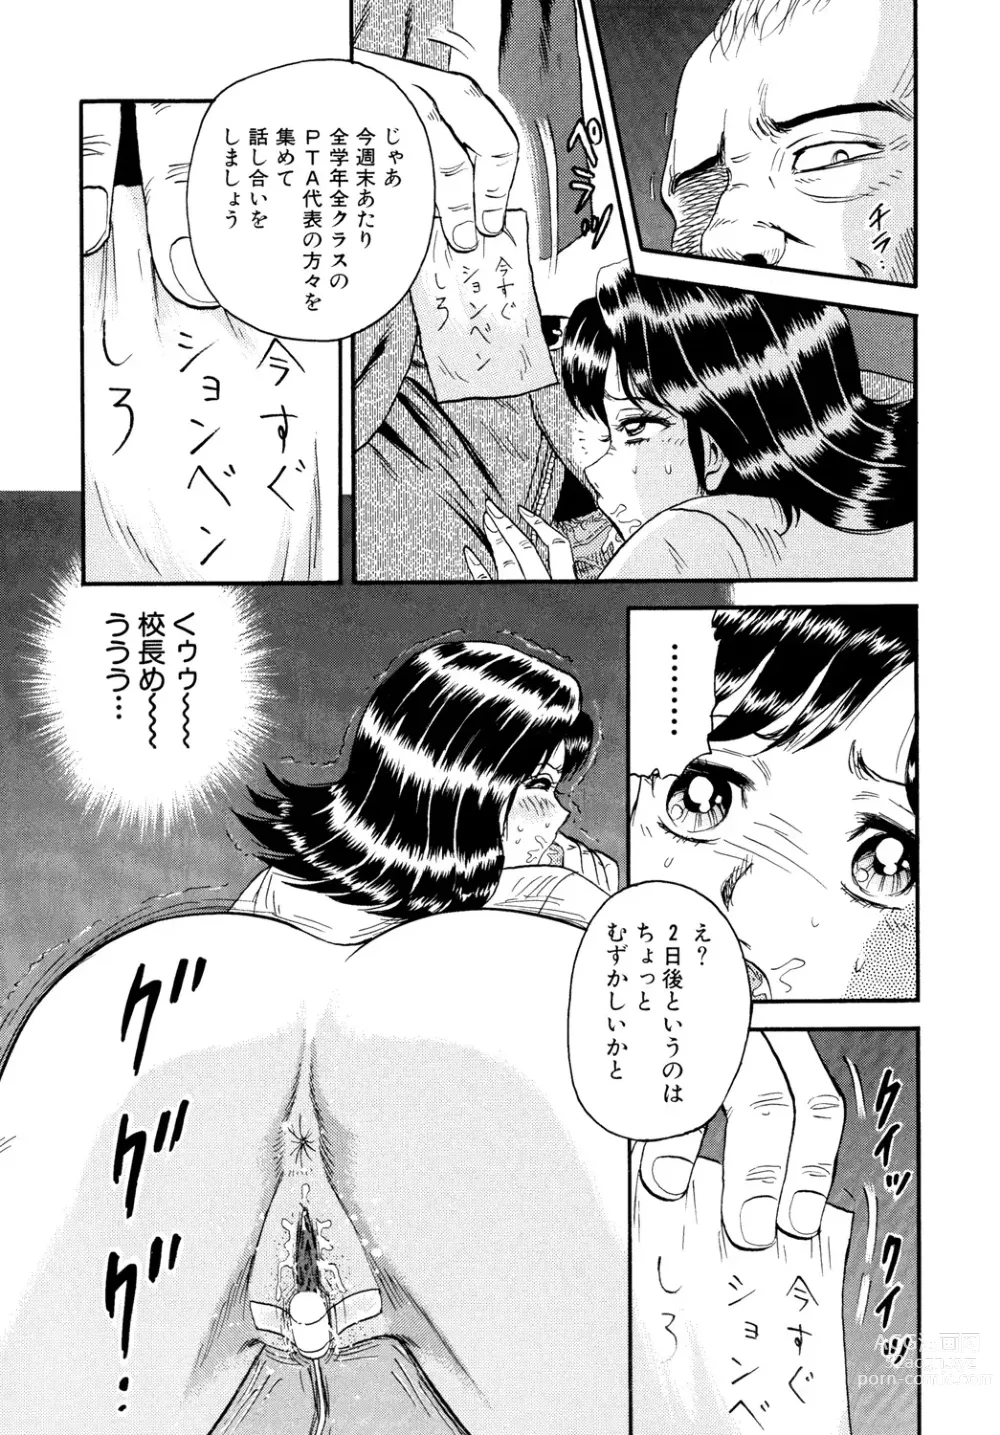 Page 7 of manga Nikuyoku no Utage